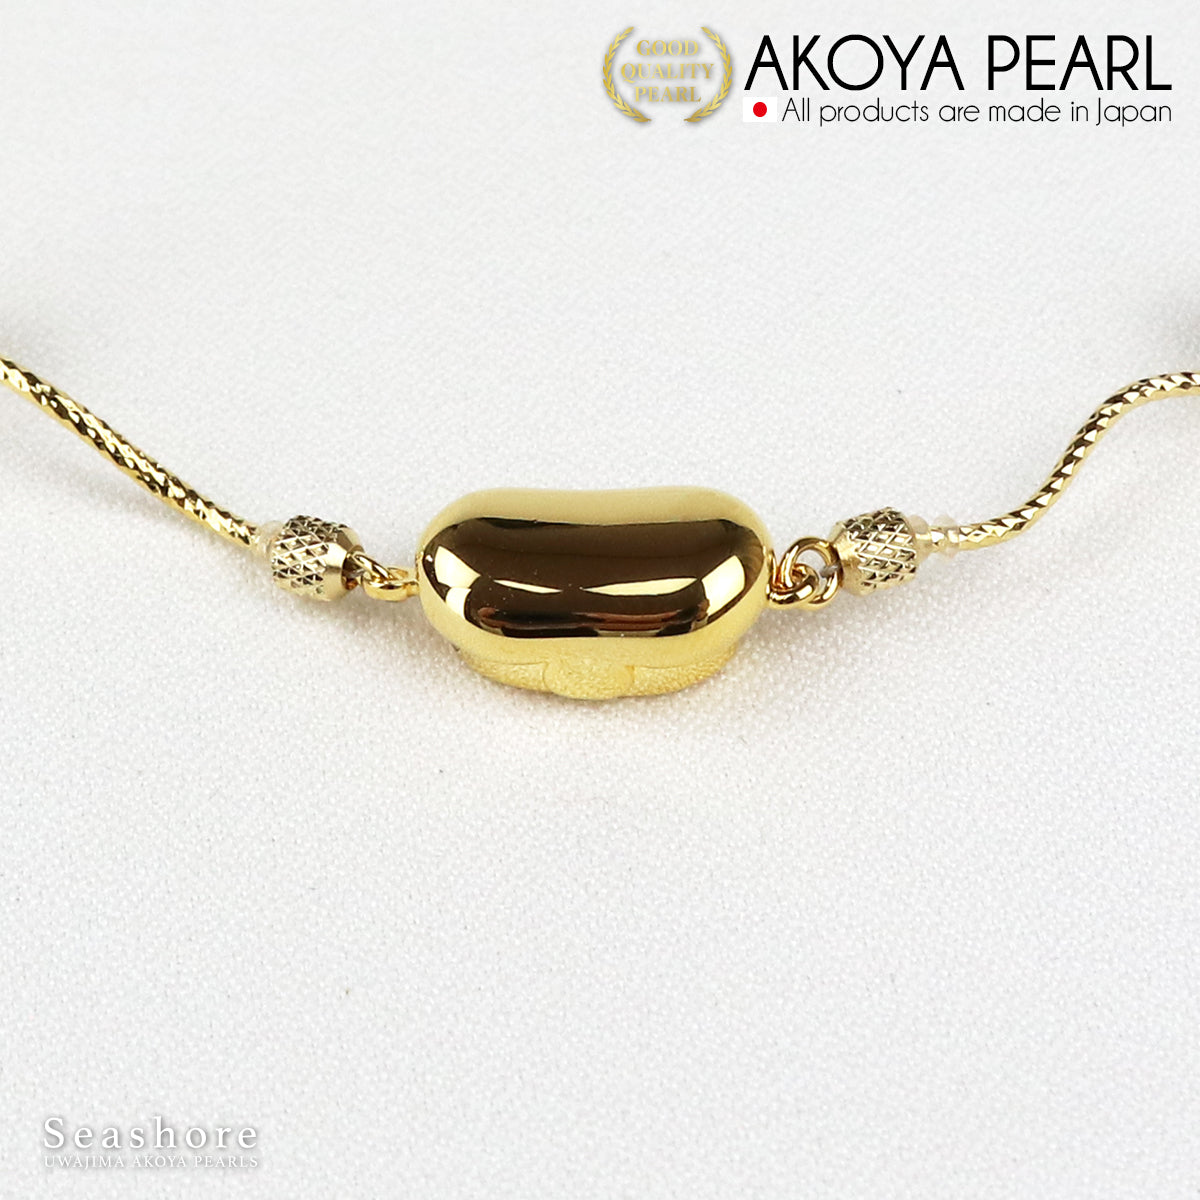 Akoya 珍珠站珍珠项链 [8.5-9.0mm] 12 颗珠子 SV925 铑/金公主款带纸板盒